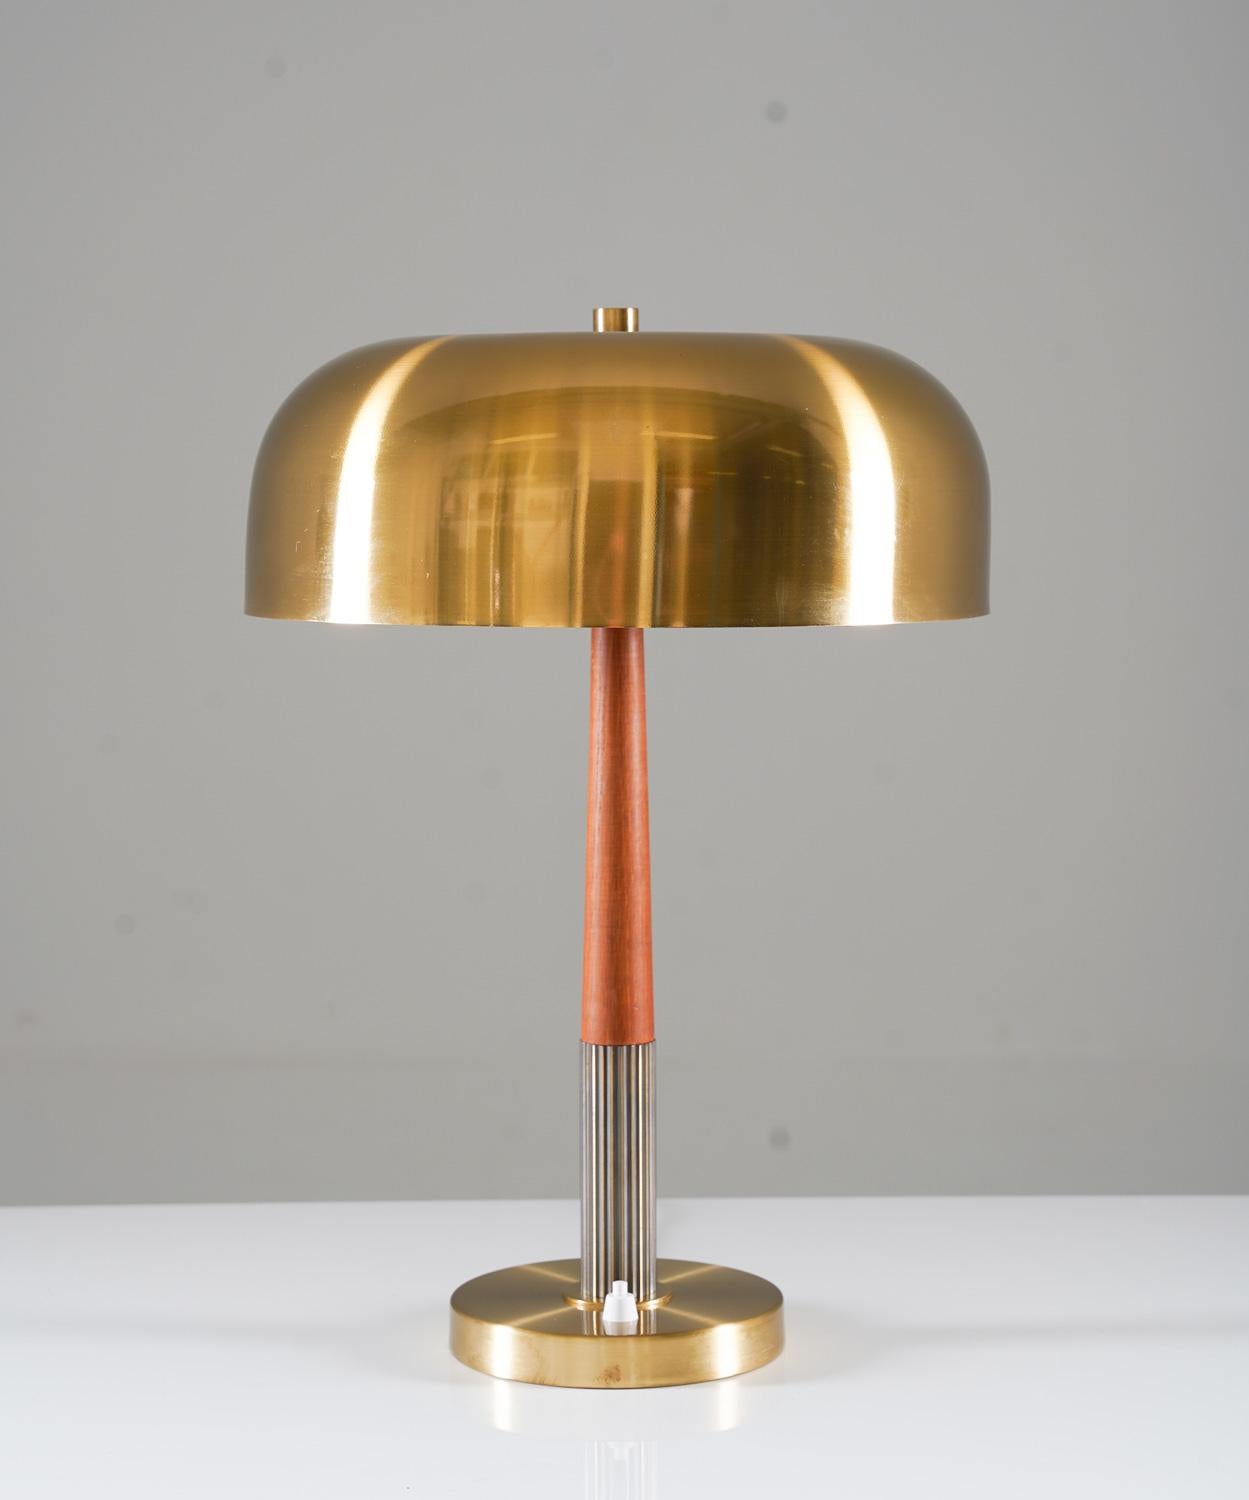 Lampe de table modèle 8391 par Boréns, Suède. 
Cette lampe est fabriquée en laiton et avec des détails en teck. 

État : très bon état. L'abat-jour n'est pas d'origine pour cette lampe, mais date du même âge.